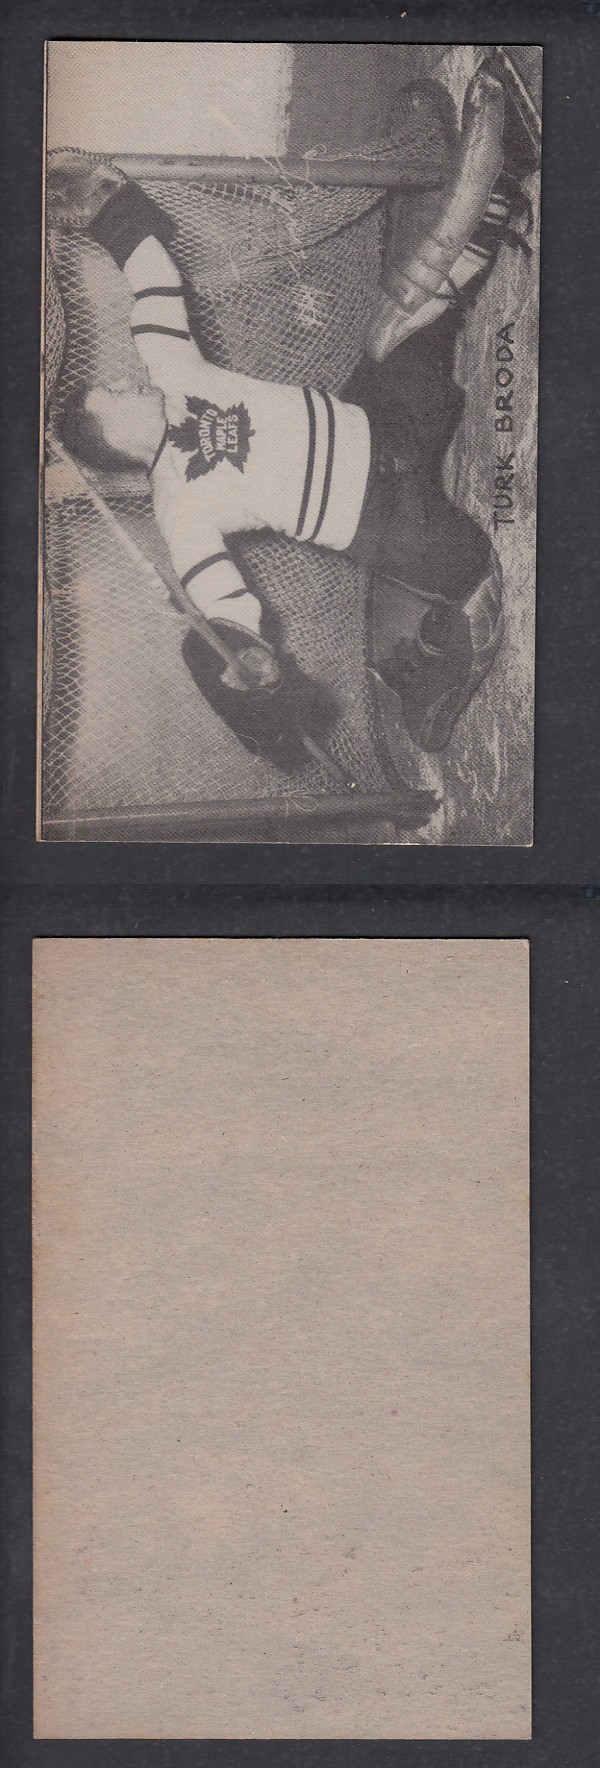 1948-52 EXHIBITS HOCKEY CARD T. BRODA photo